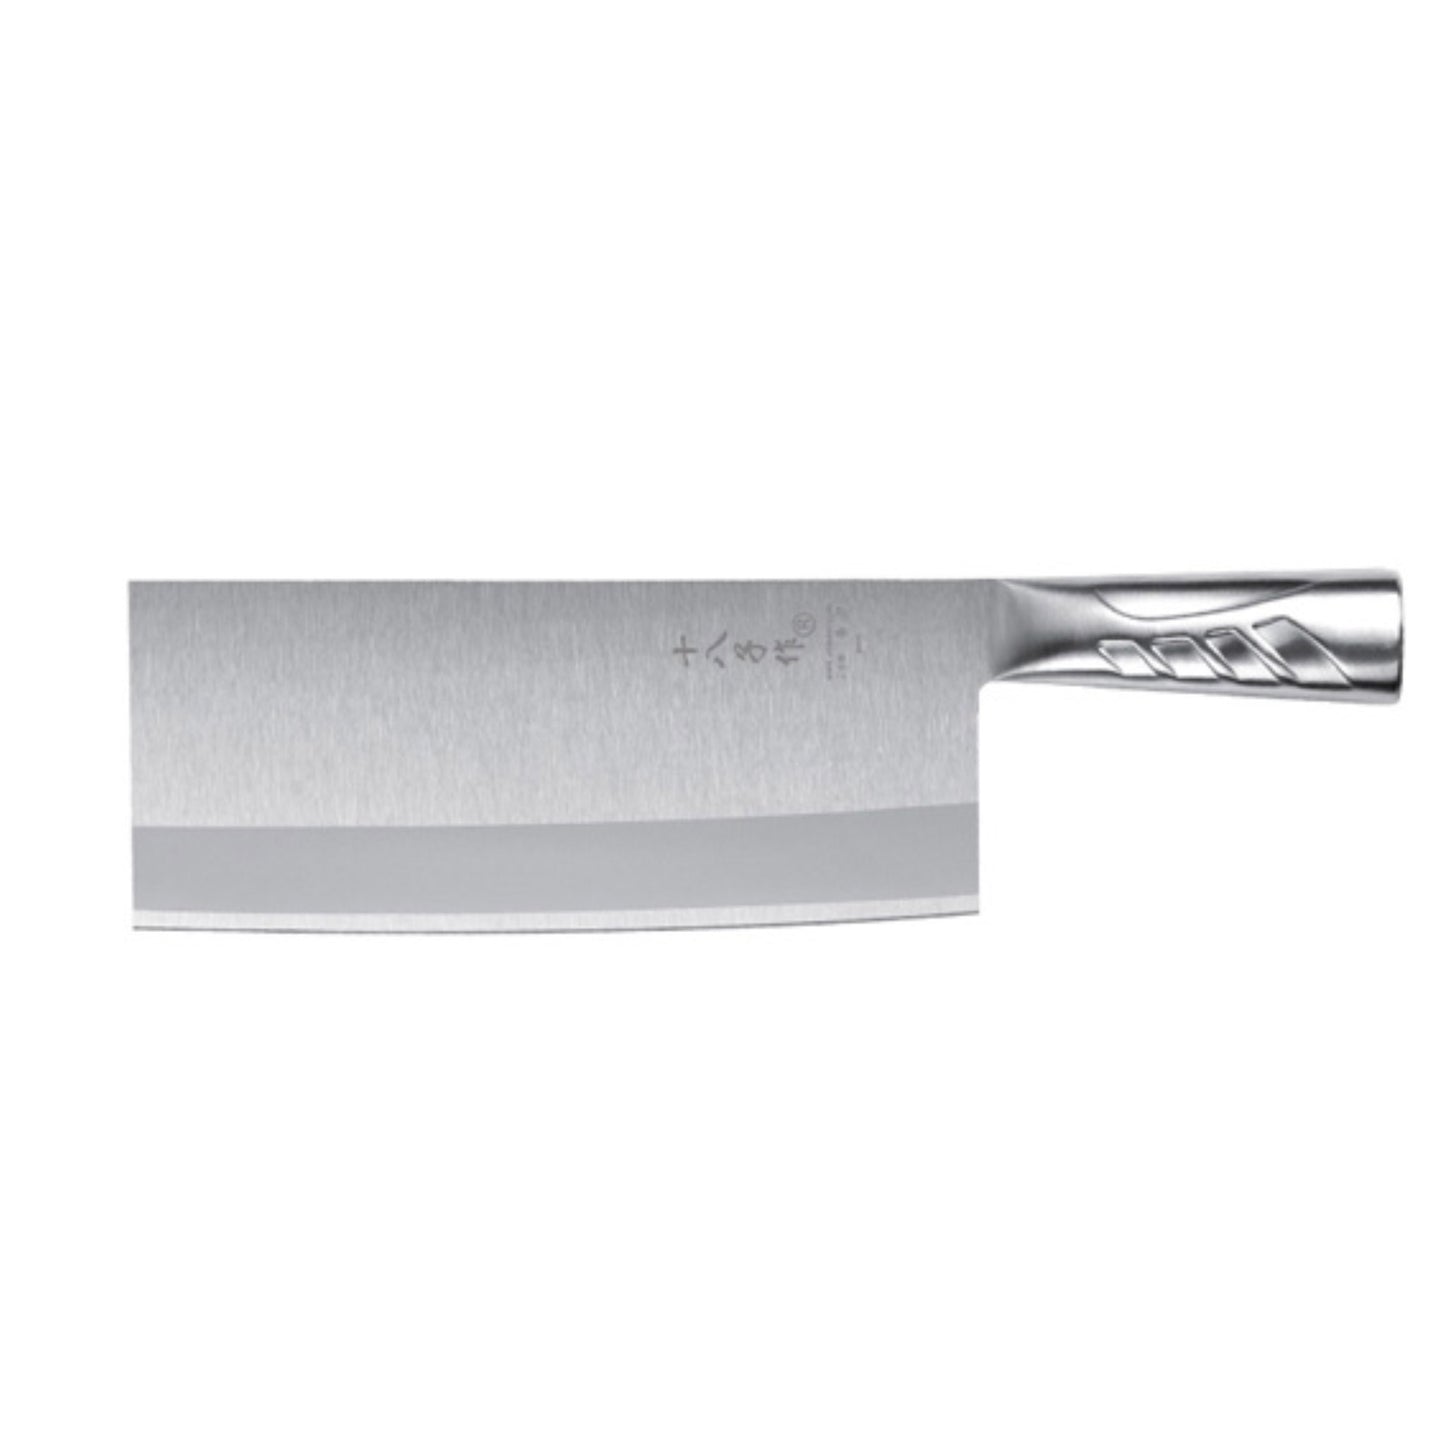 S/STEEL KNIFE 1#TP03-1